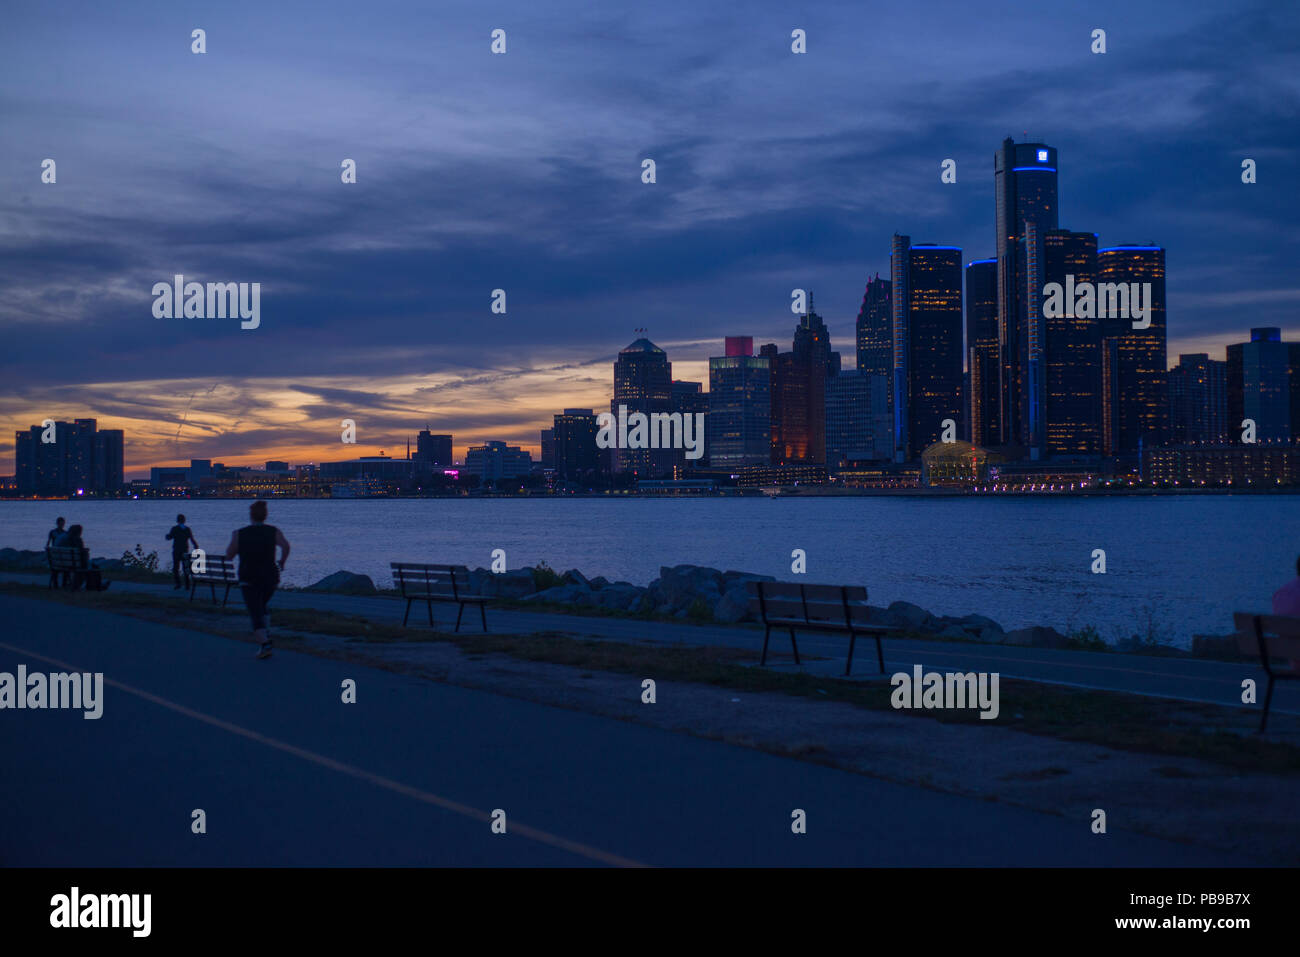 DETROIT, MI - September 23, 2015: Blick auf die Skyline von Detroit mit der Welt Hauptquartier von General Motors Corporation, entlang des Detroit River gelegen Stockfoto